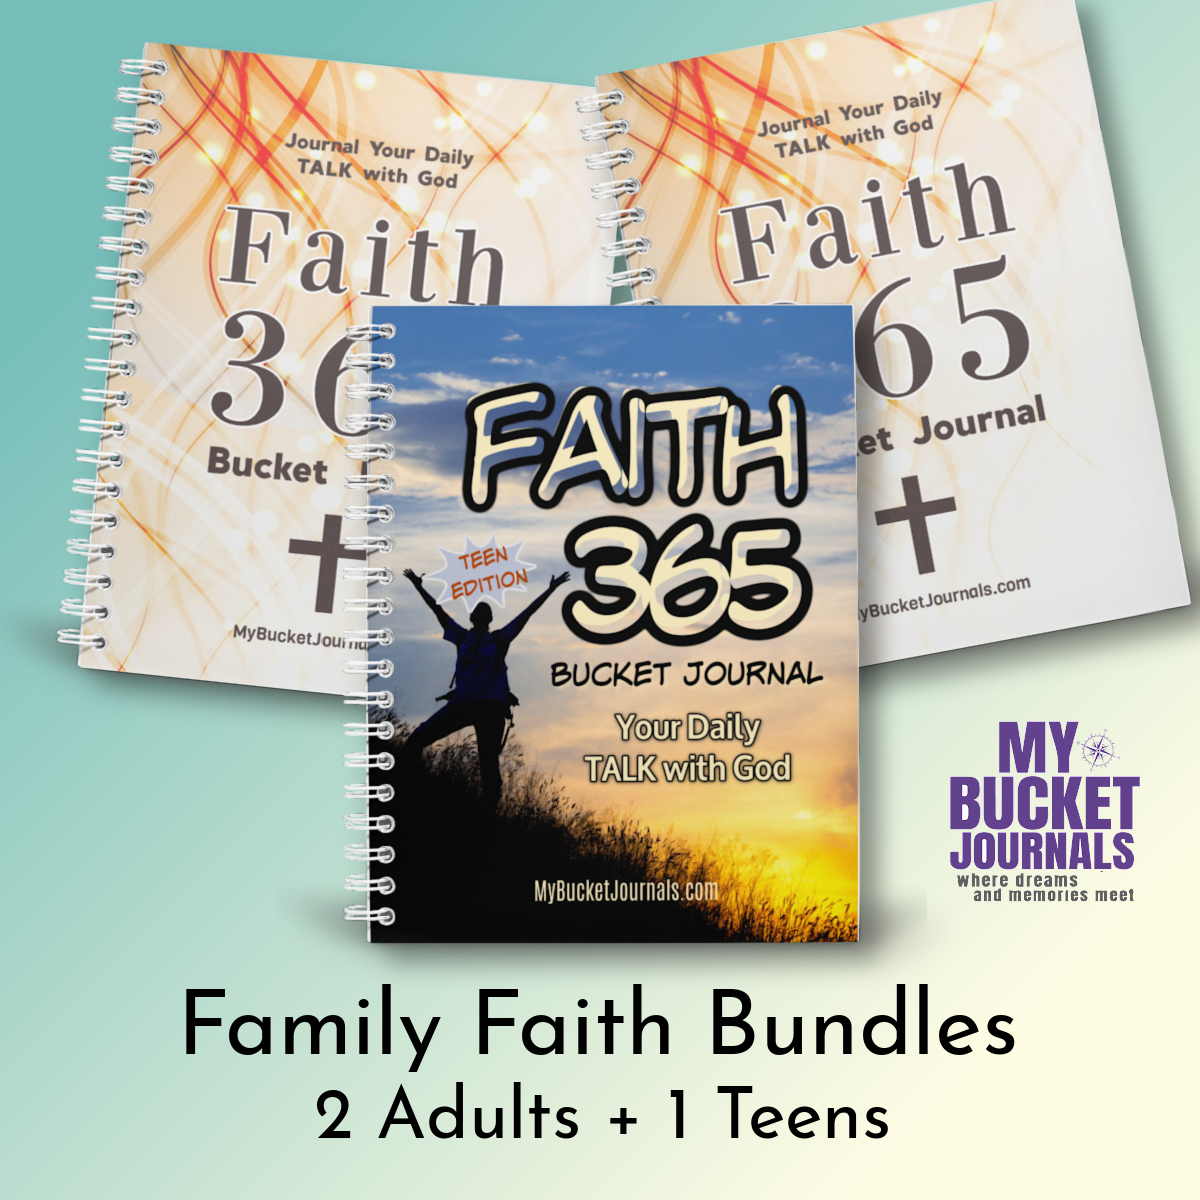 Family Faith Bundles - 2 Adult + 1 Teen